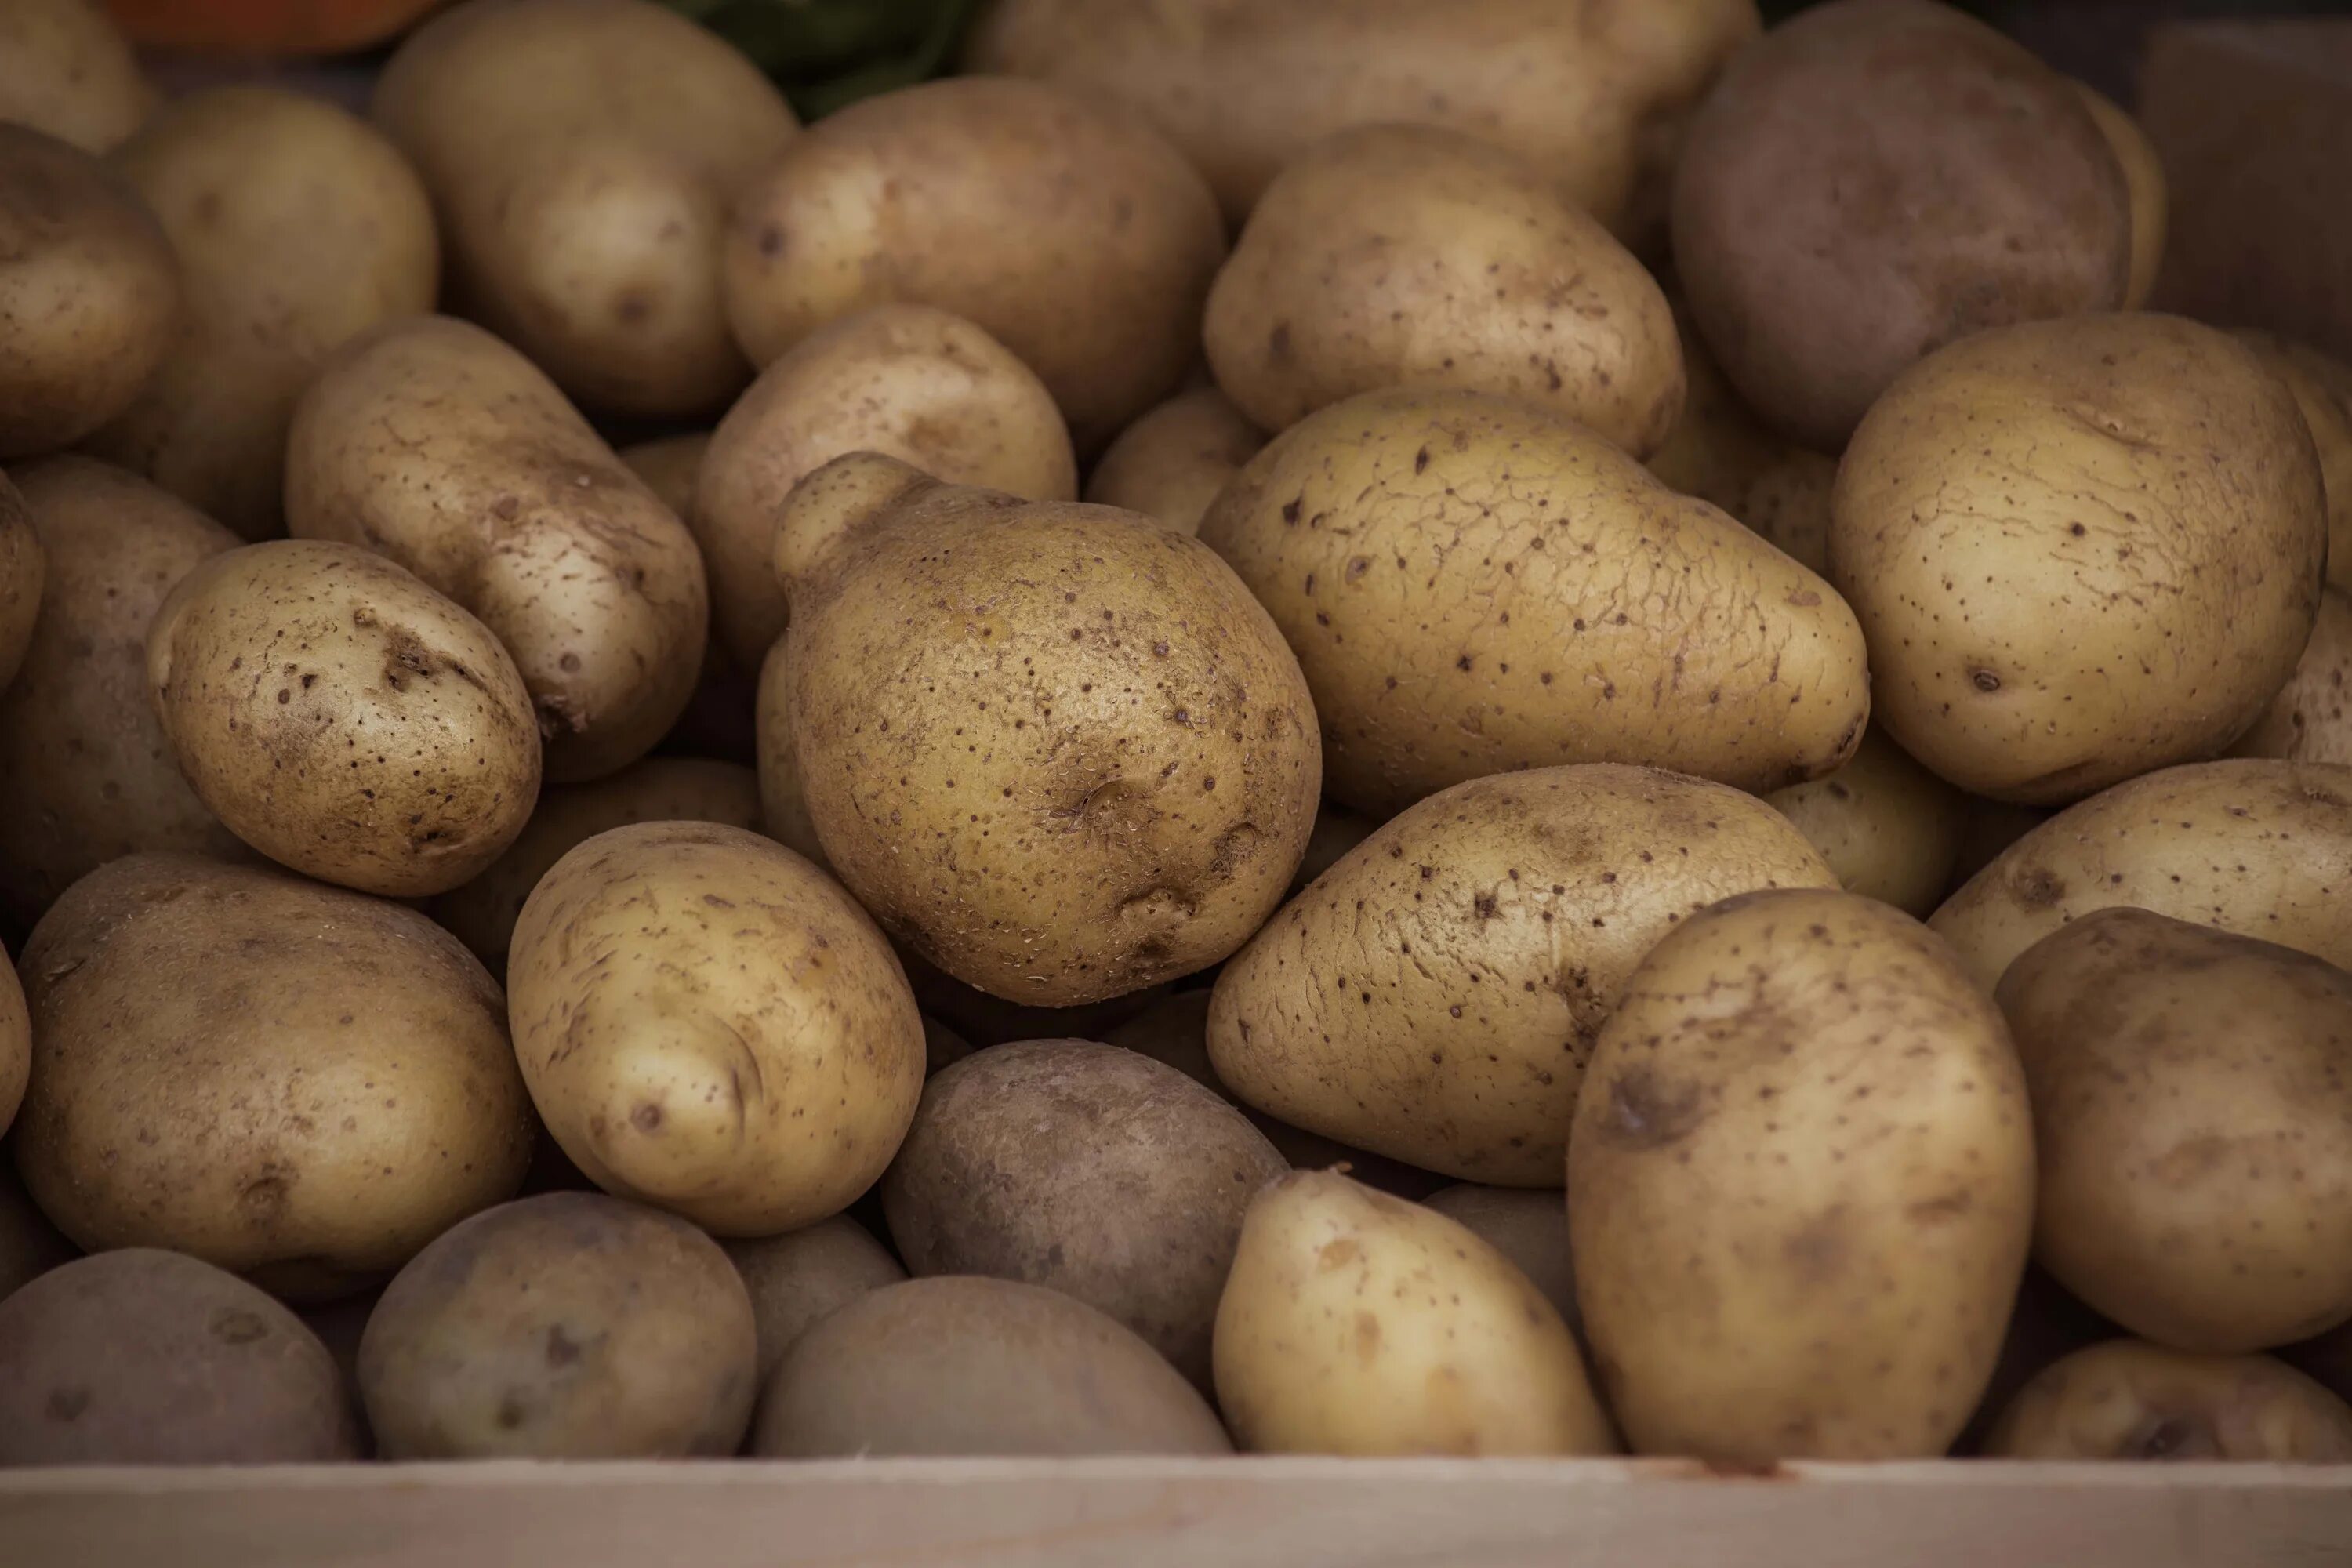 Potatoes picture. Коричневый картофель. Коричневая картошка. Органический картофель. Импортная картошка.